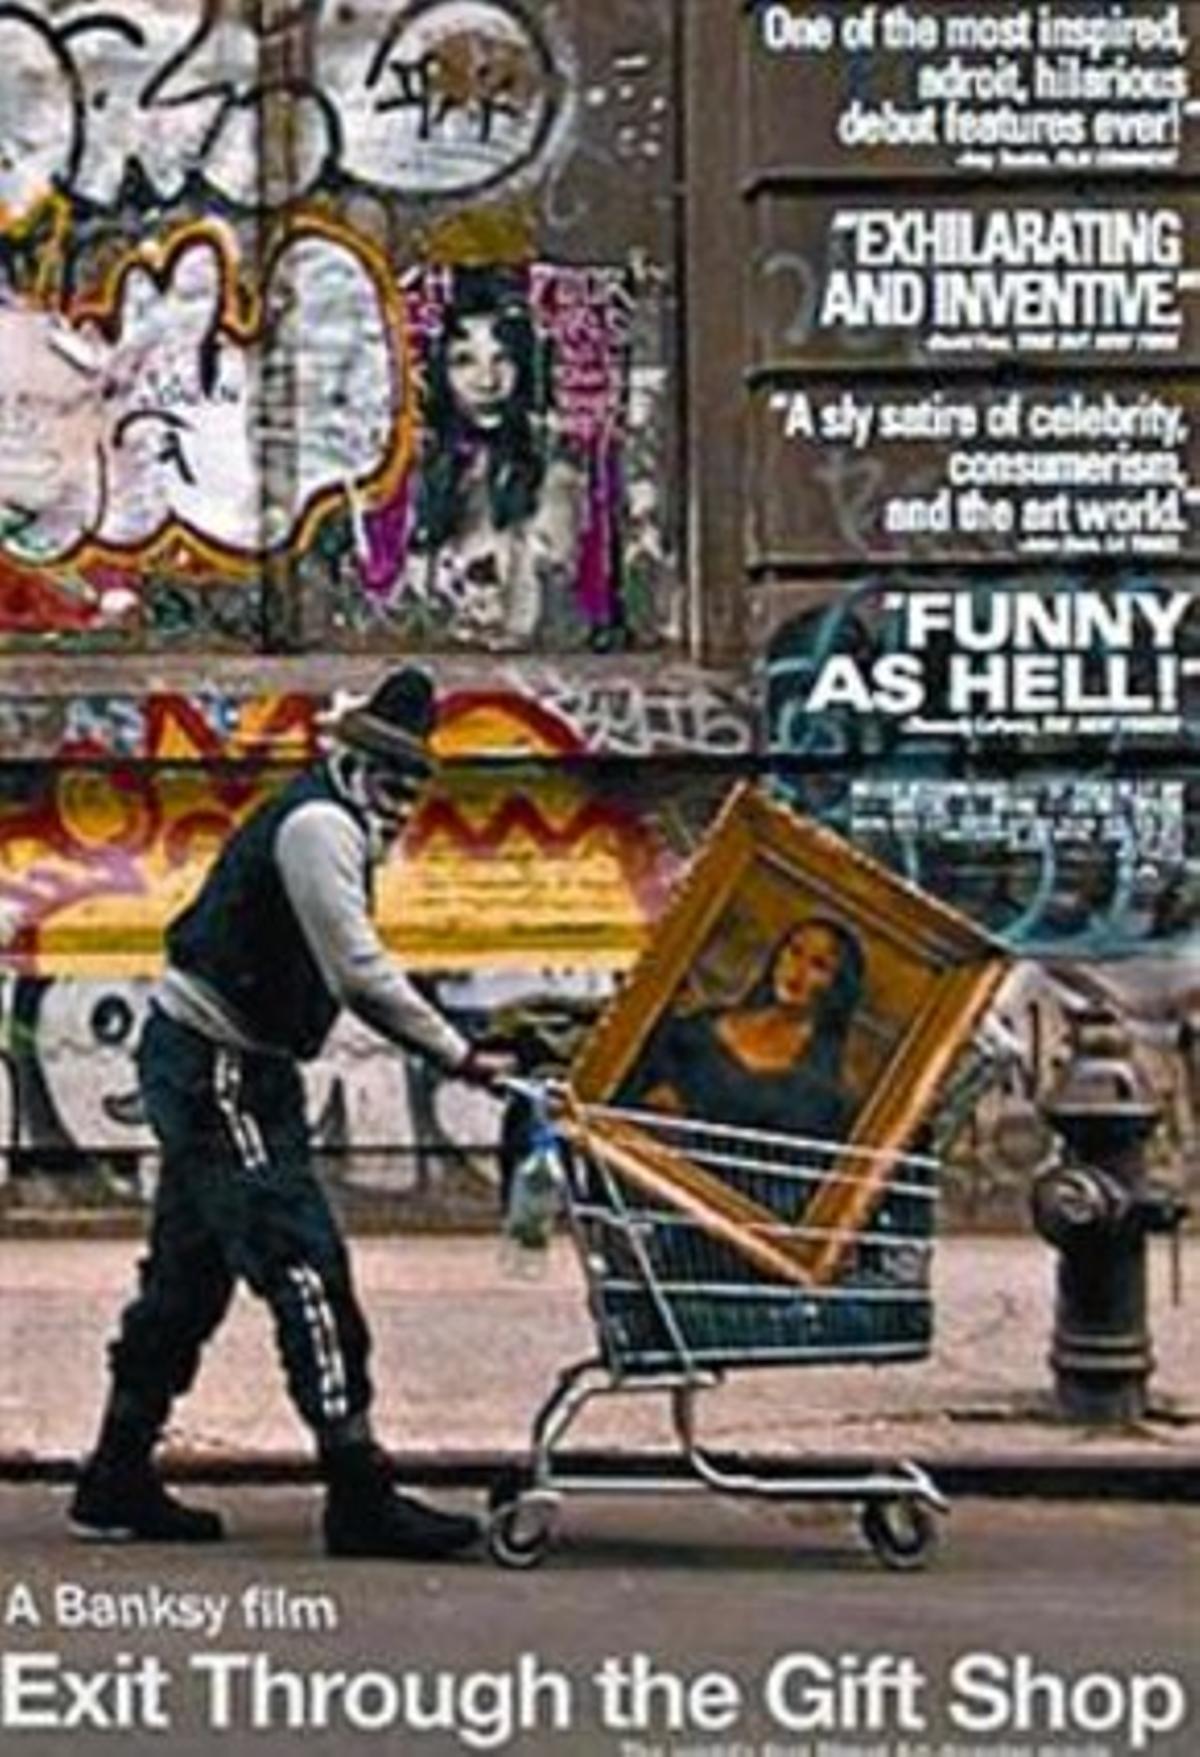 El arte urbano y de guerrilla Exit through the gift shop_MEDIA_1